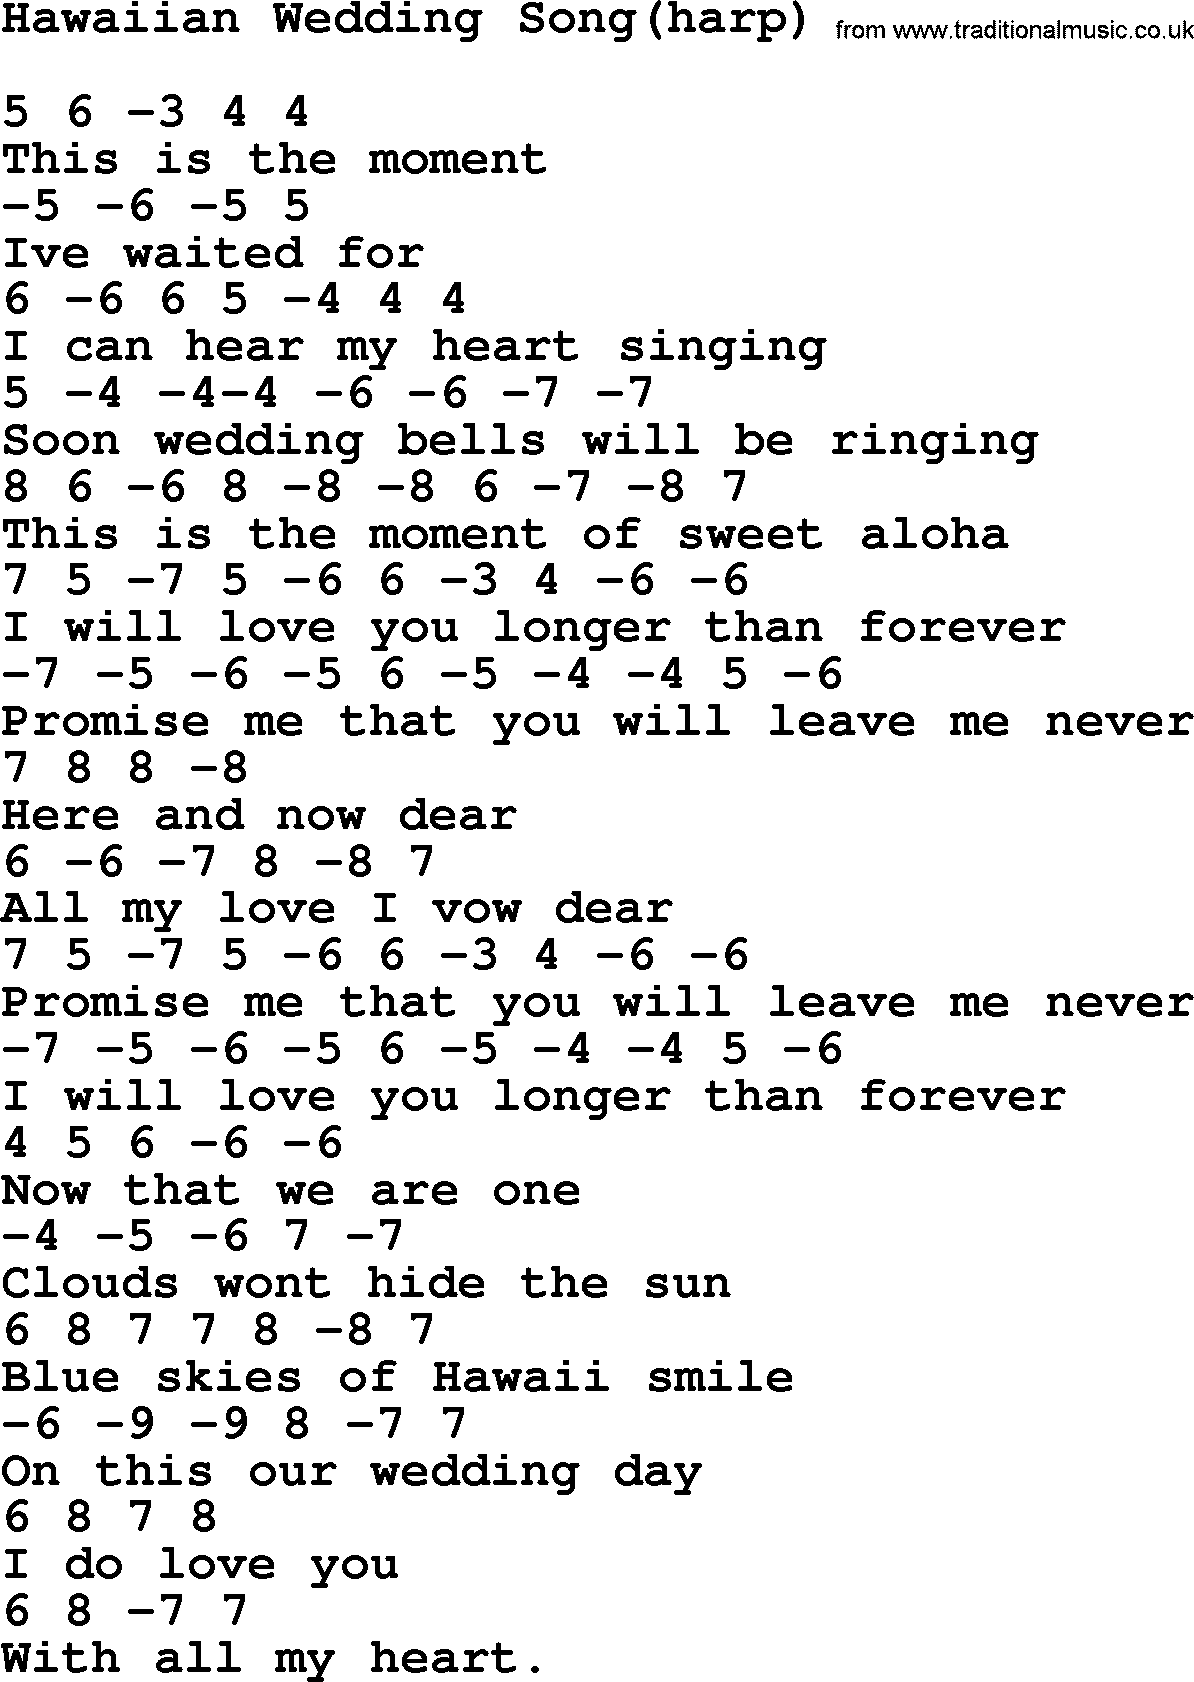 Elvis Presley song: Hawaiian Wedding Song(harp), lyrics and chords